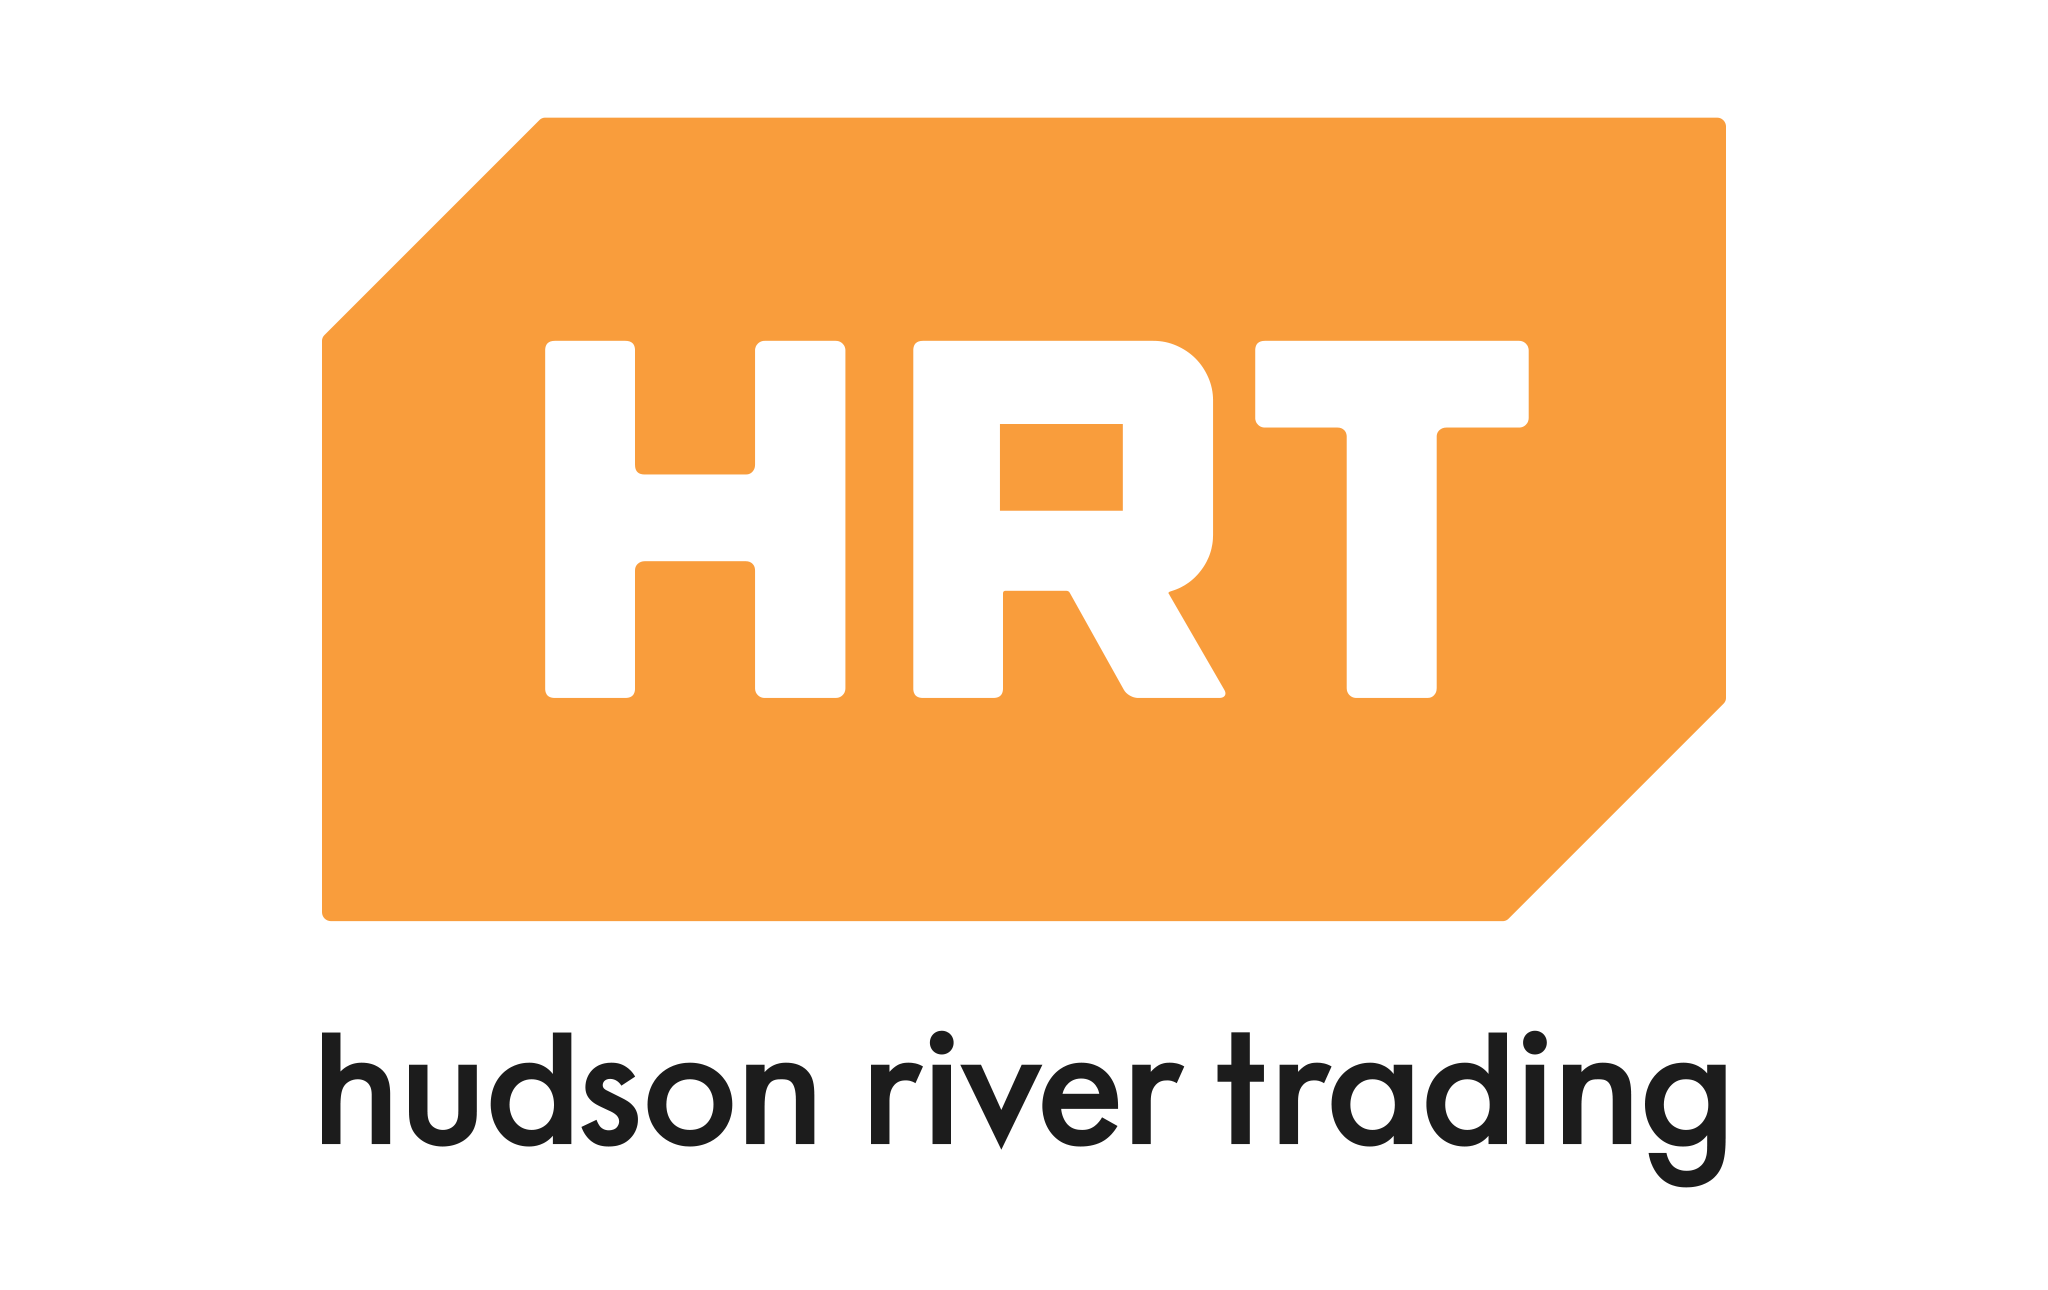 Hudson River Trading